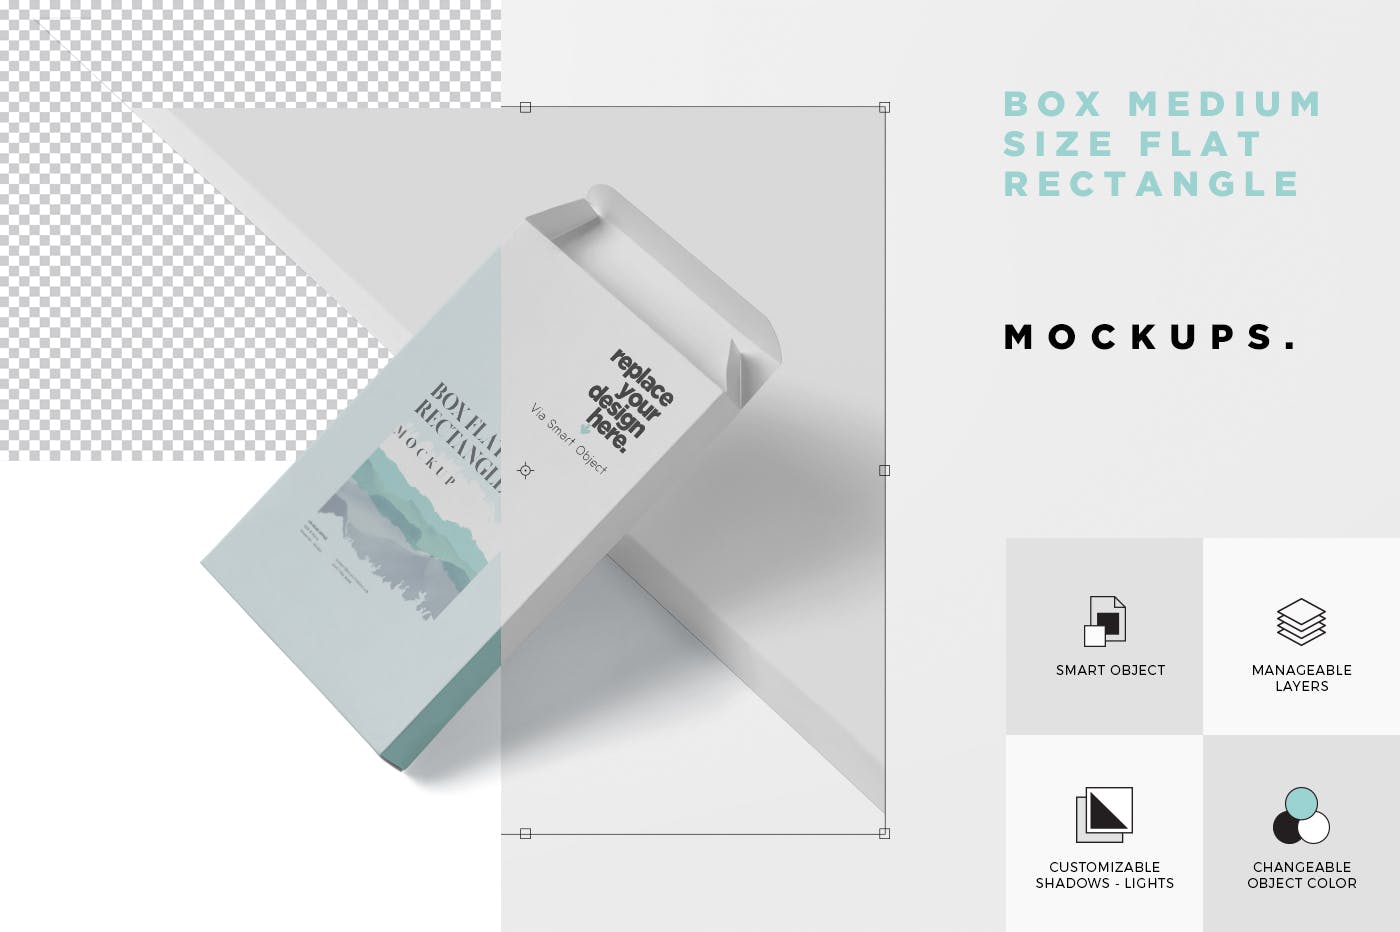 扁平矩形扑克牌包装盒蚂蚁素材精选模板 Box Mockup – Medium Size Flat Rectangle Shape插图(4)